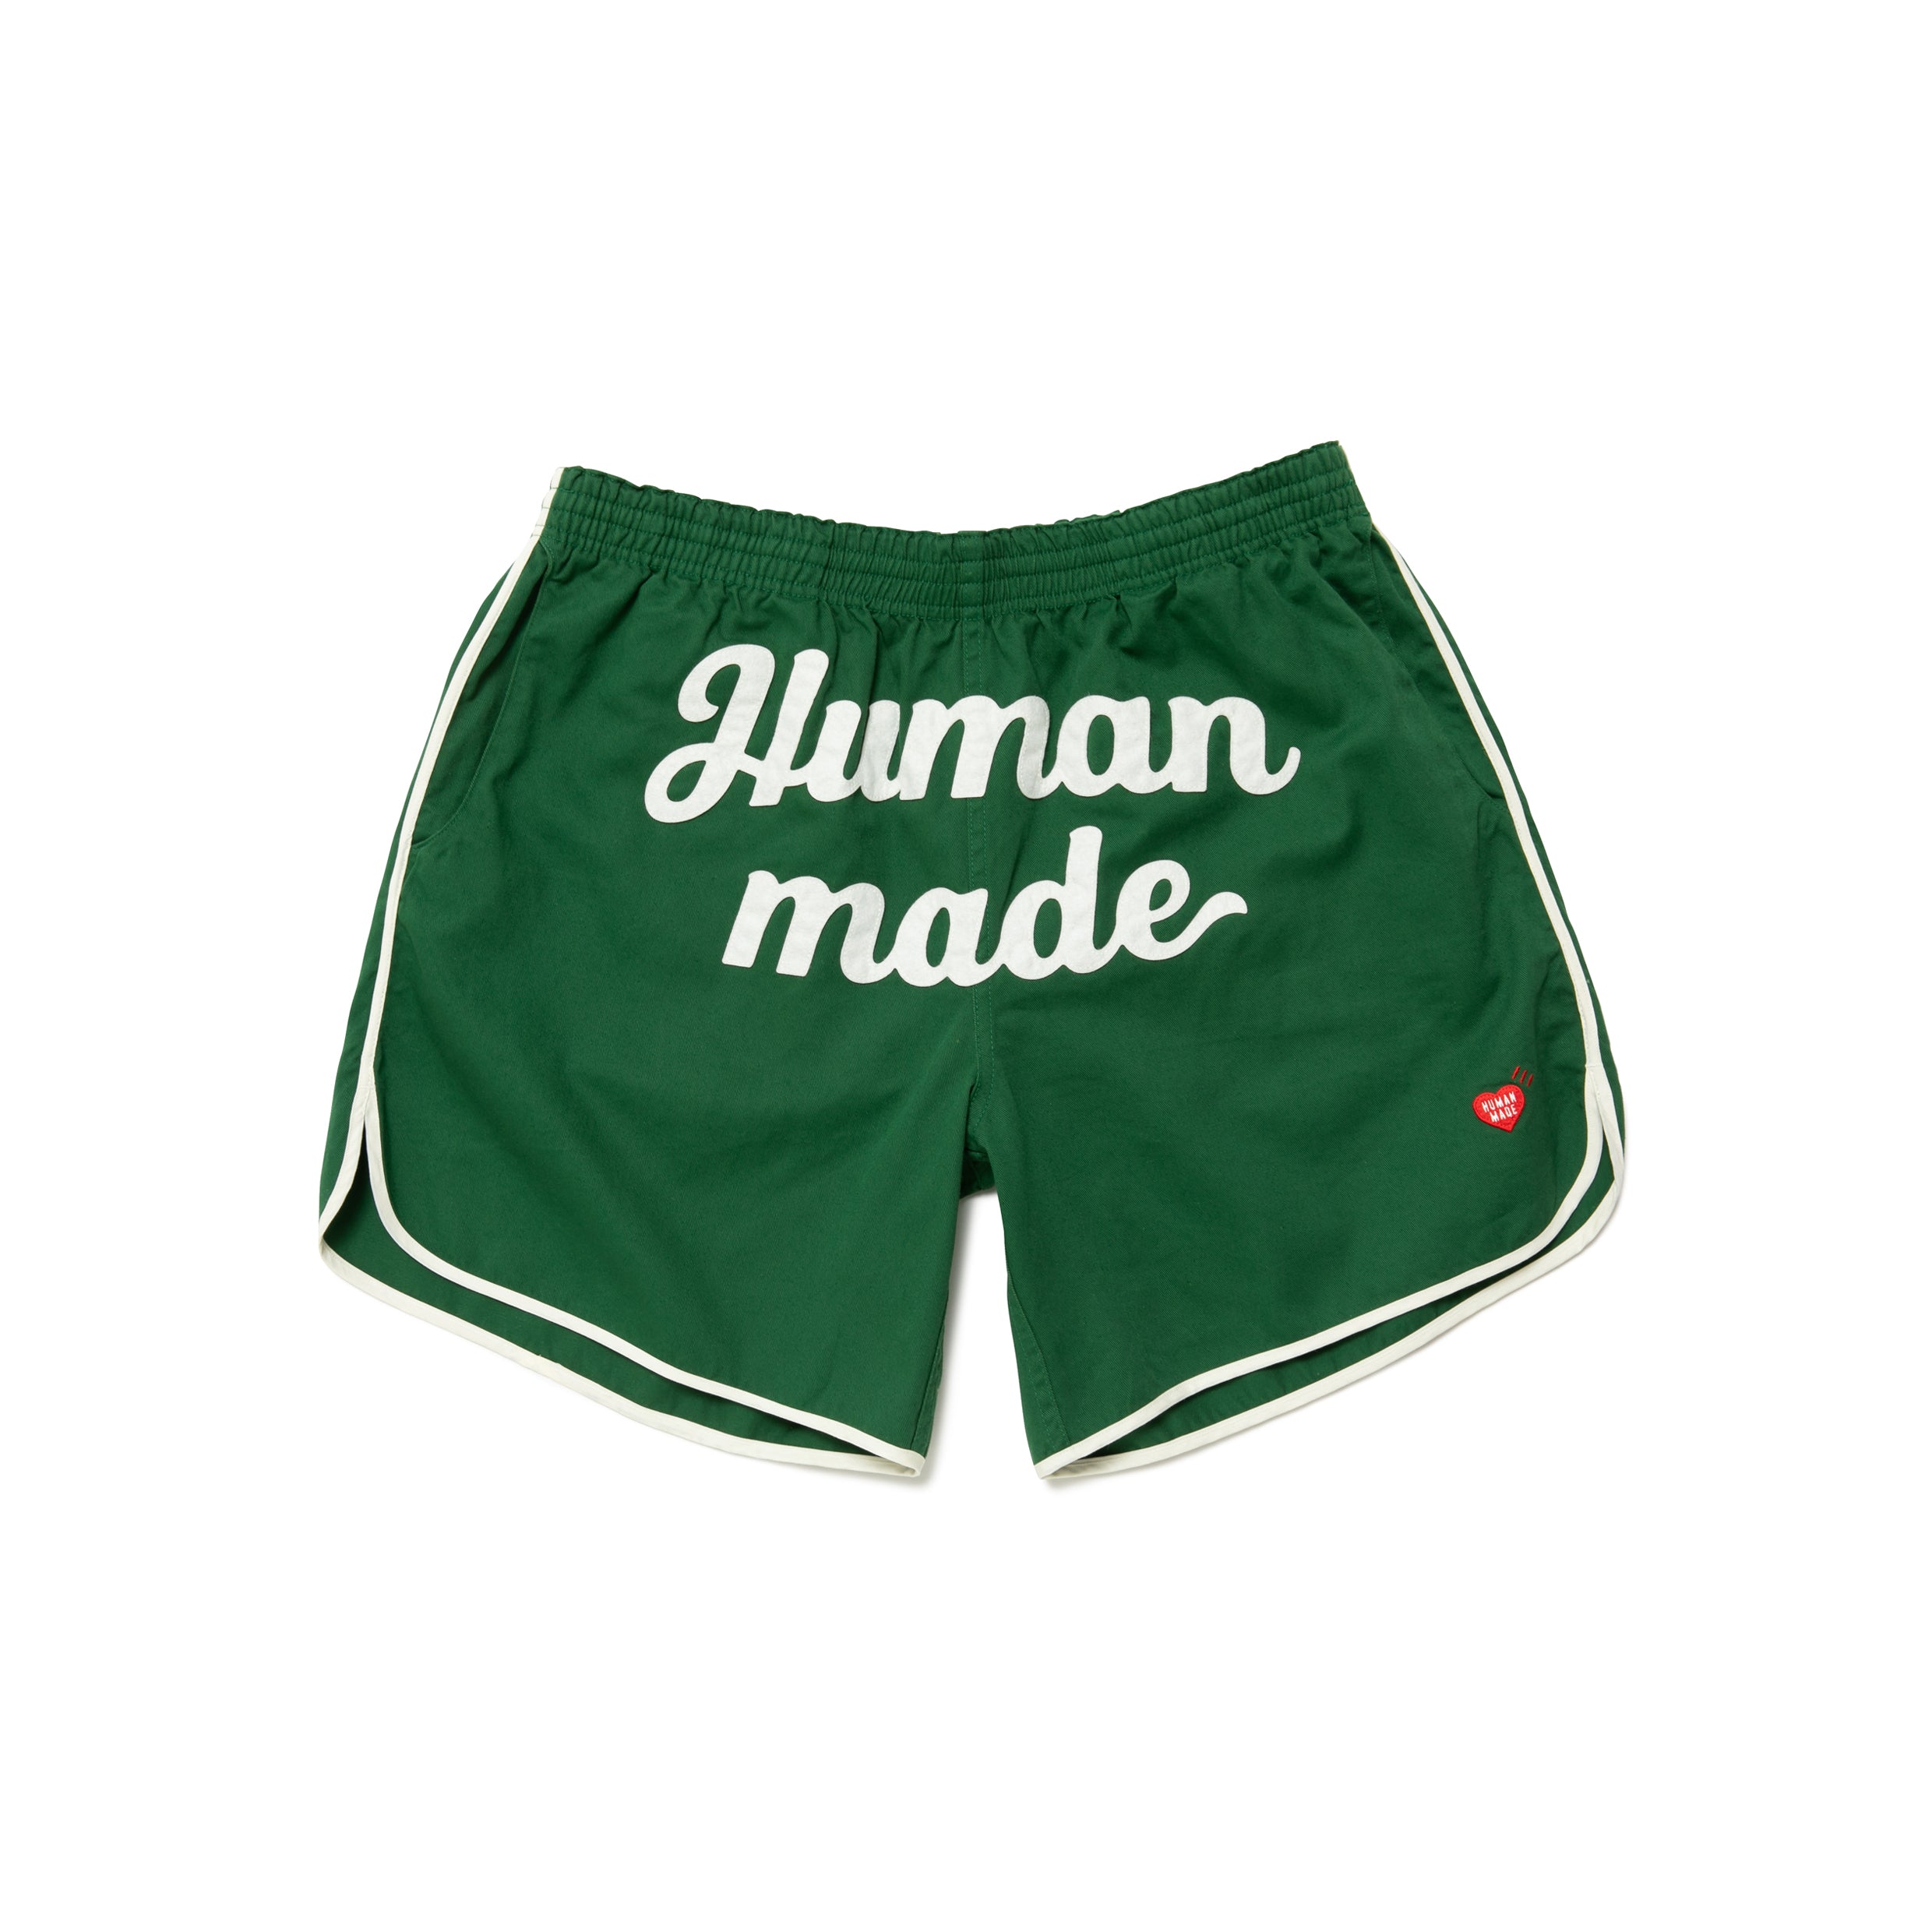 完売品 human made game shorts green XL